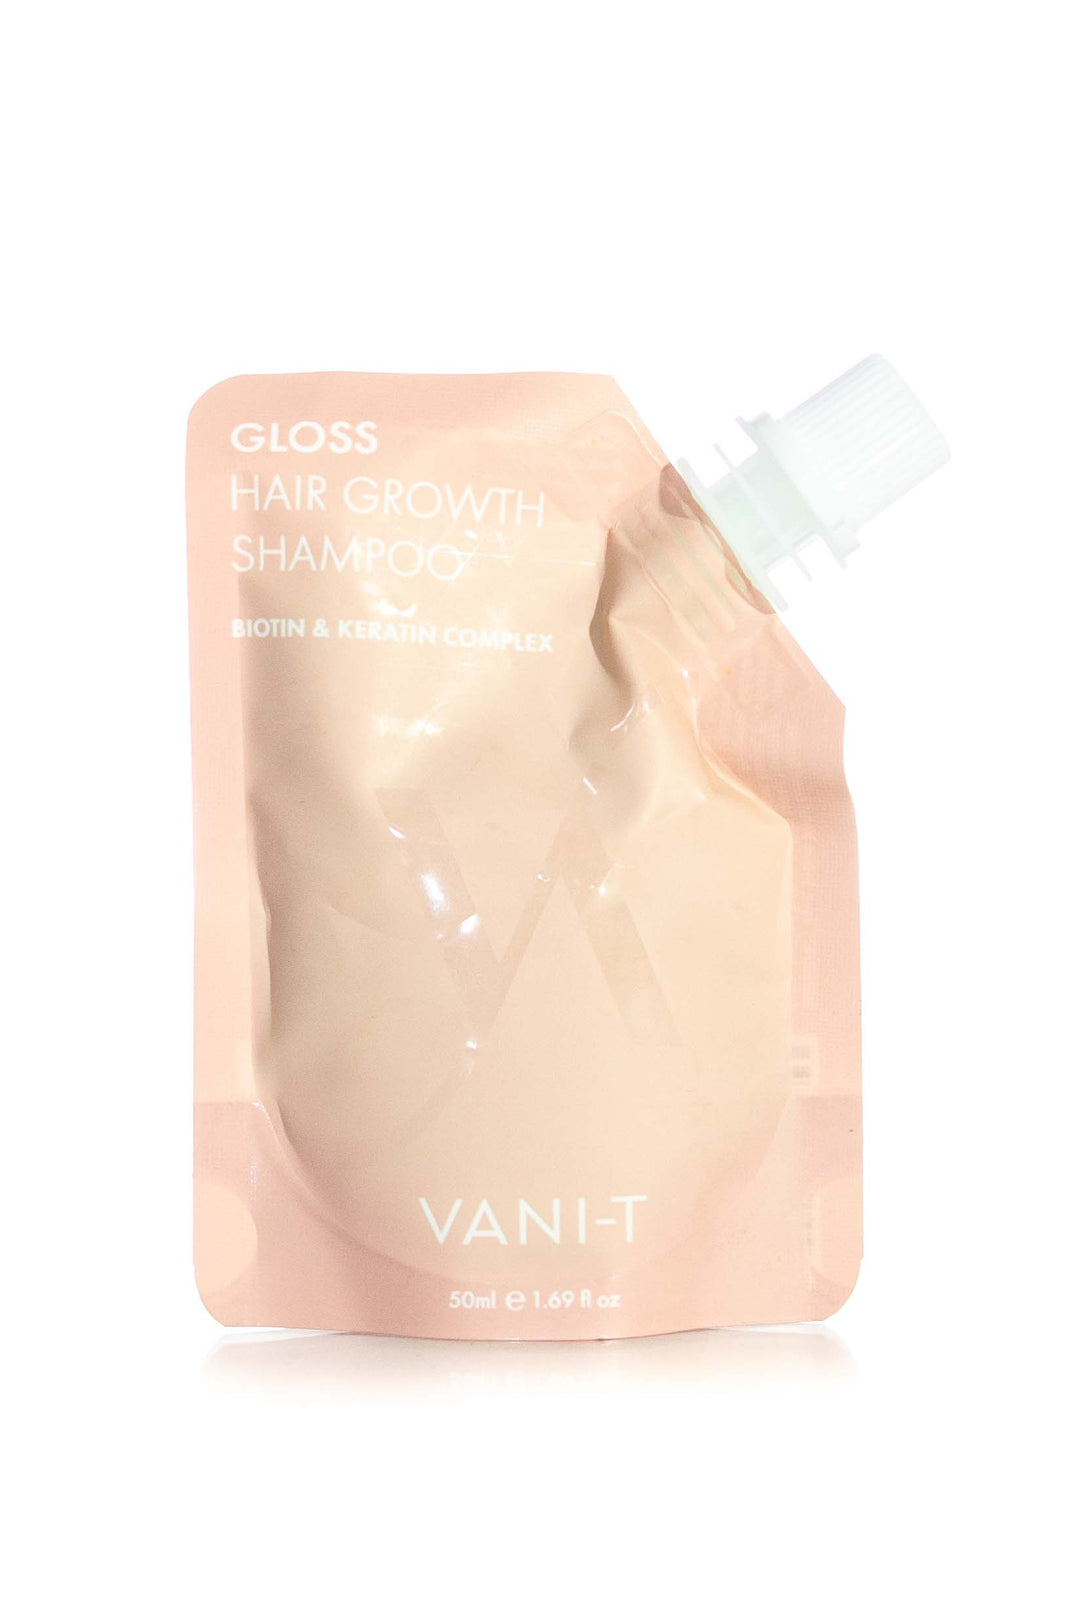 VANI-T GLOSS HAIR GROWTH SHAMPOO 50ML